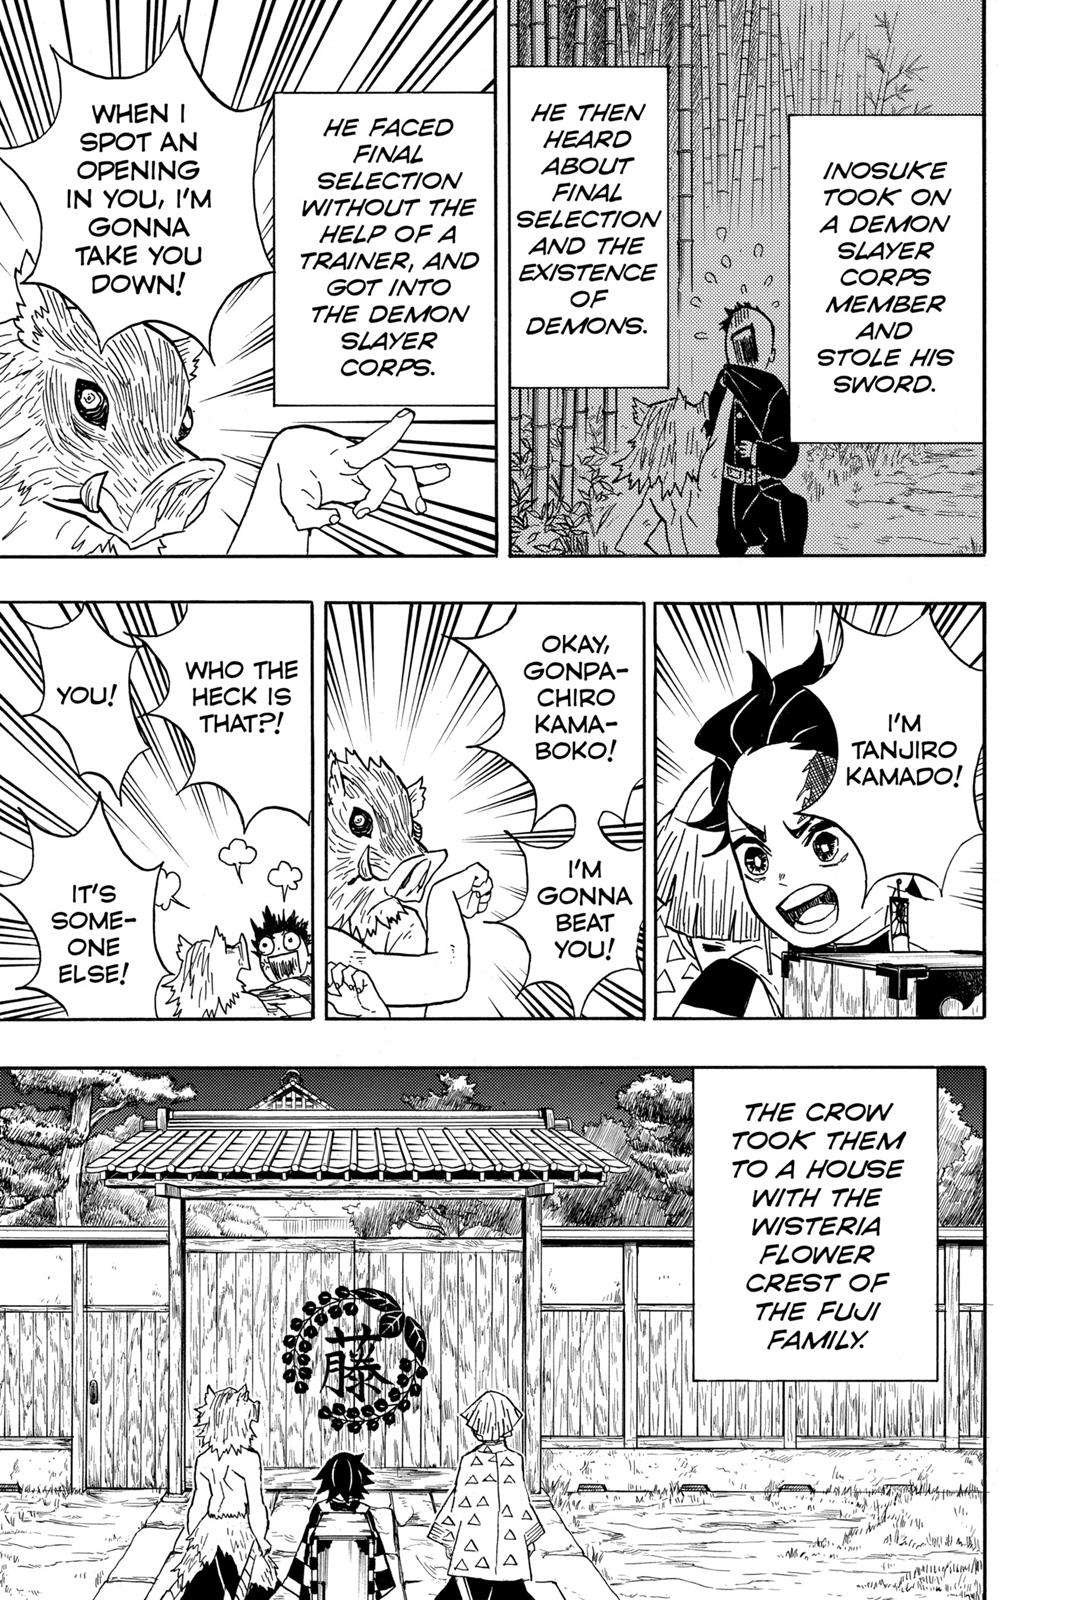 Demon Slayer Manga Manga Chapter - 27 - image 9